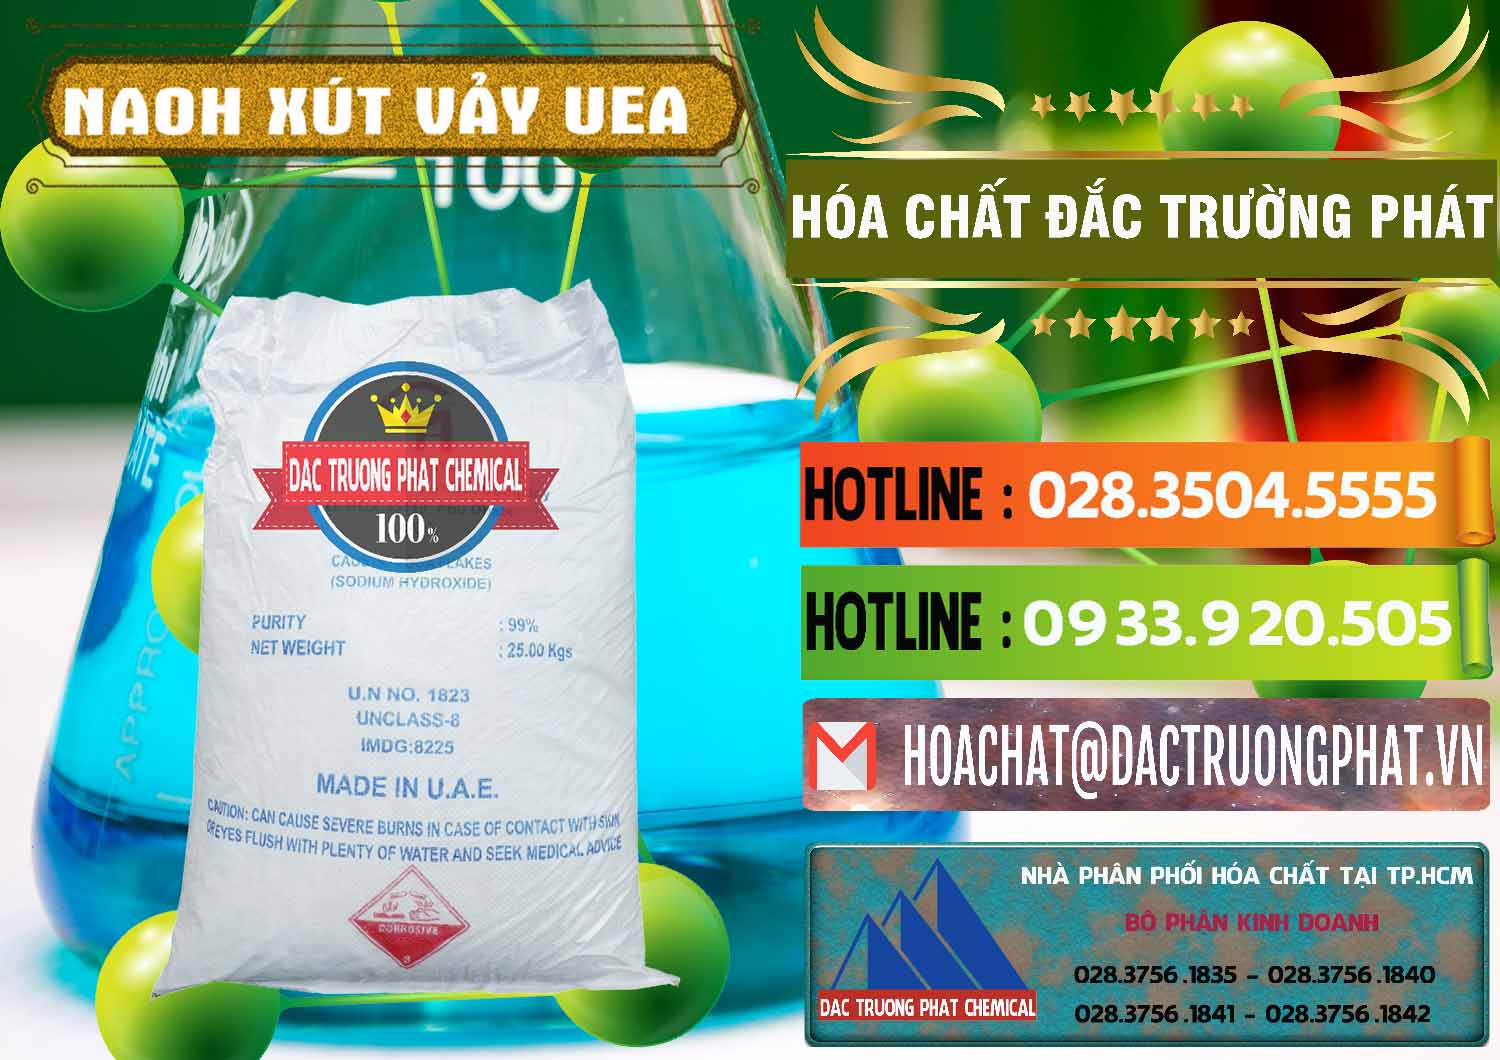 Bán ( cung ứng ) Xút Vảy - NaOH Vảy UAE Iran - 0432 - Công ty nhập khẩu và phân phối hóa chất tại TP.HCM - cungcaphoachat.com.vn